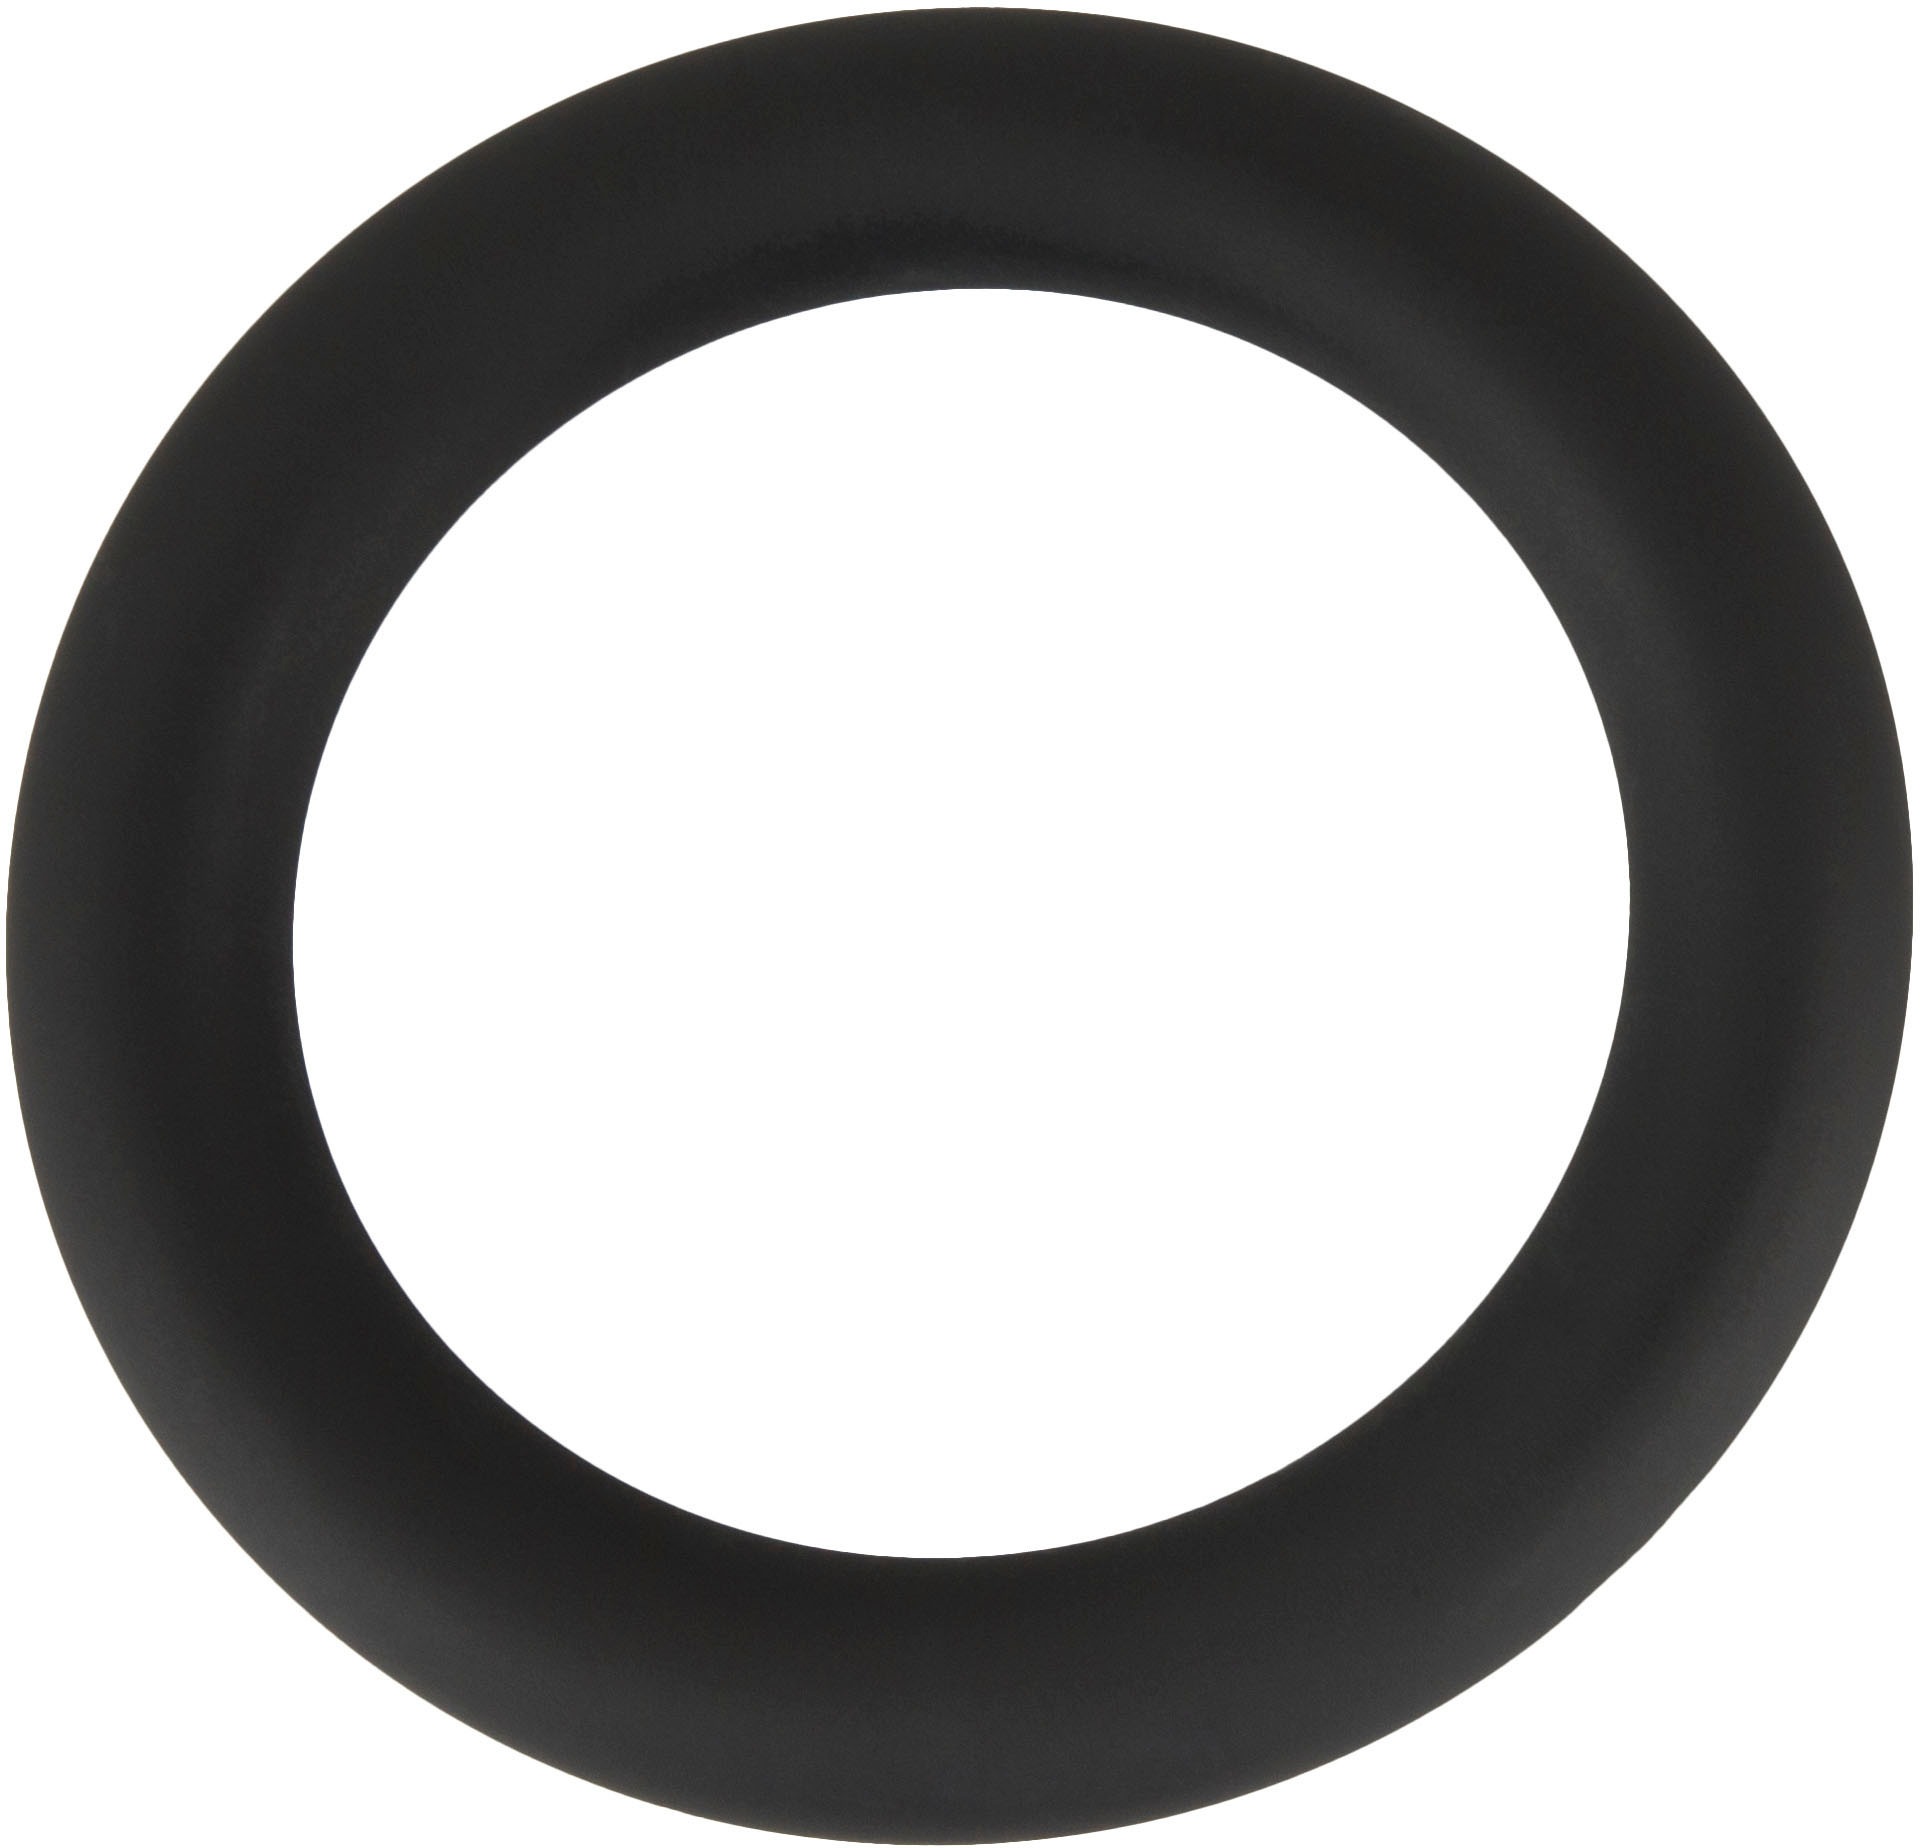 BLACK VELVETS Penis-Hoden-Ring